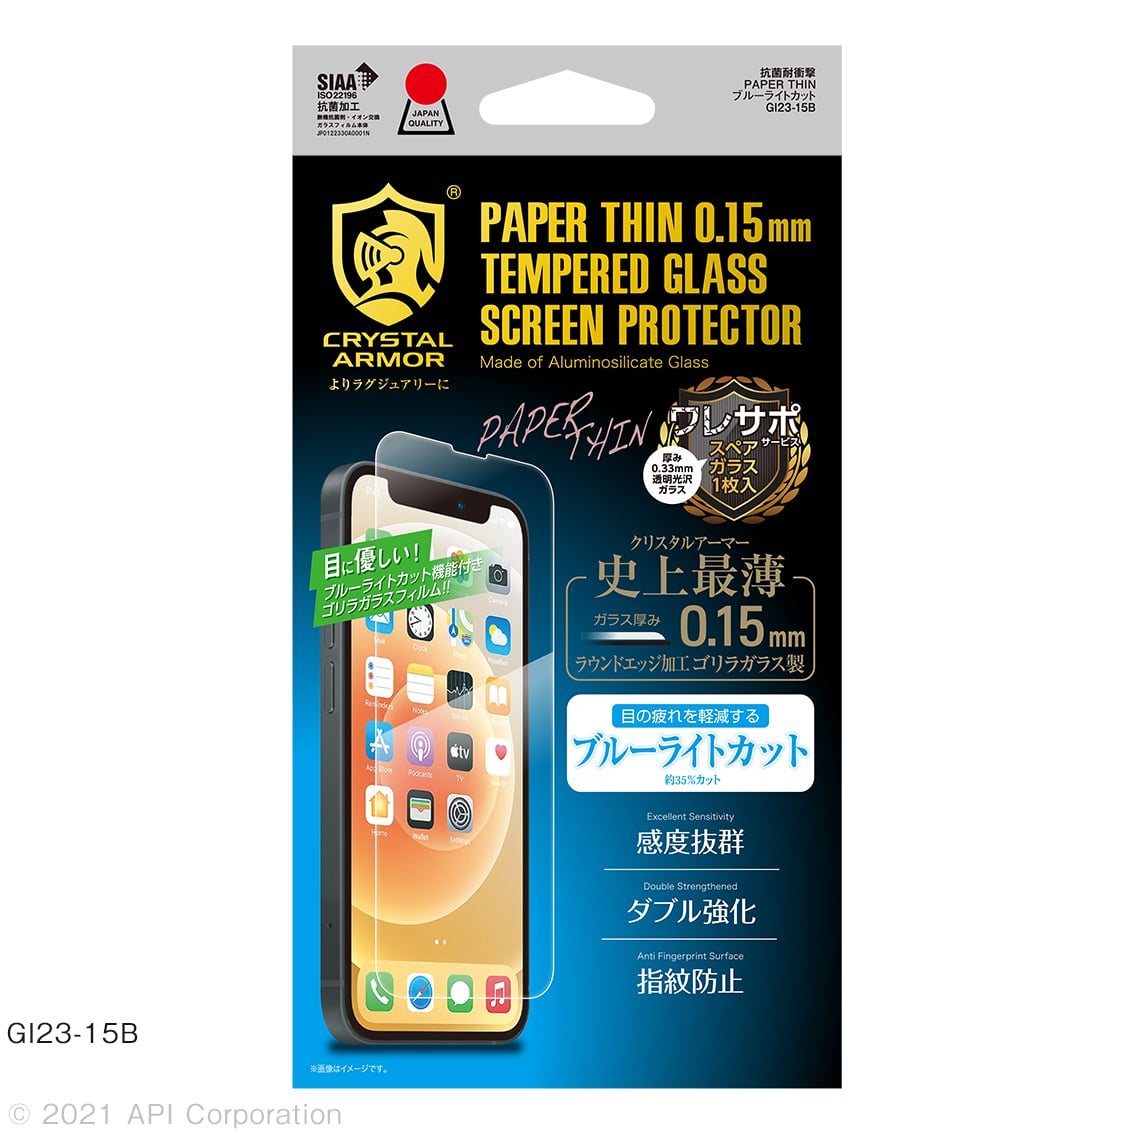 iPhone13 mini 対応 超薄 0.15mm ガラスフィルム クリア ブルーライトカット 覗き見防止 iPhone 2021年モデル 5.4インチ